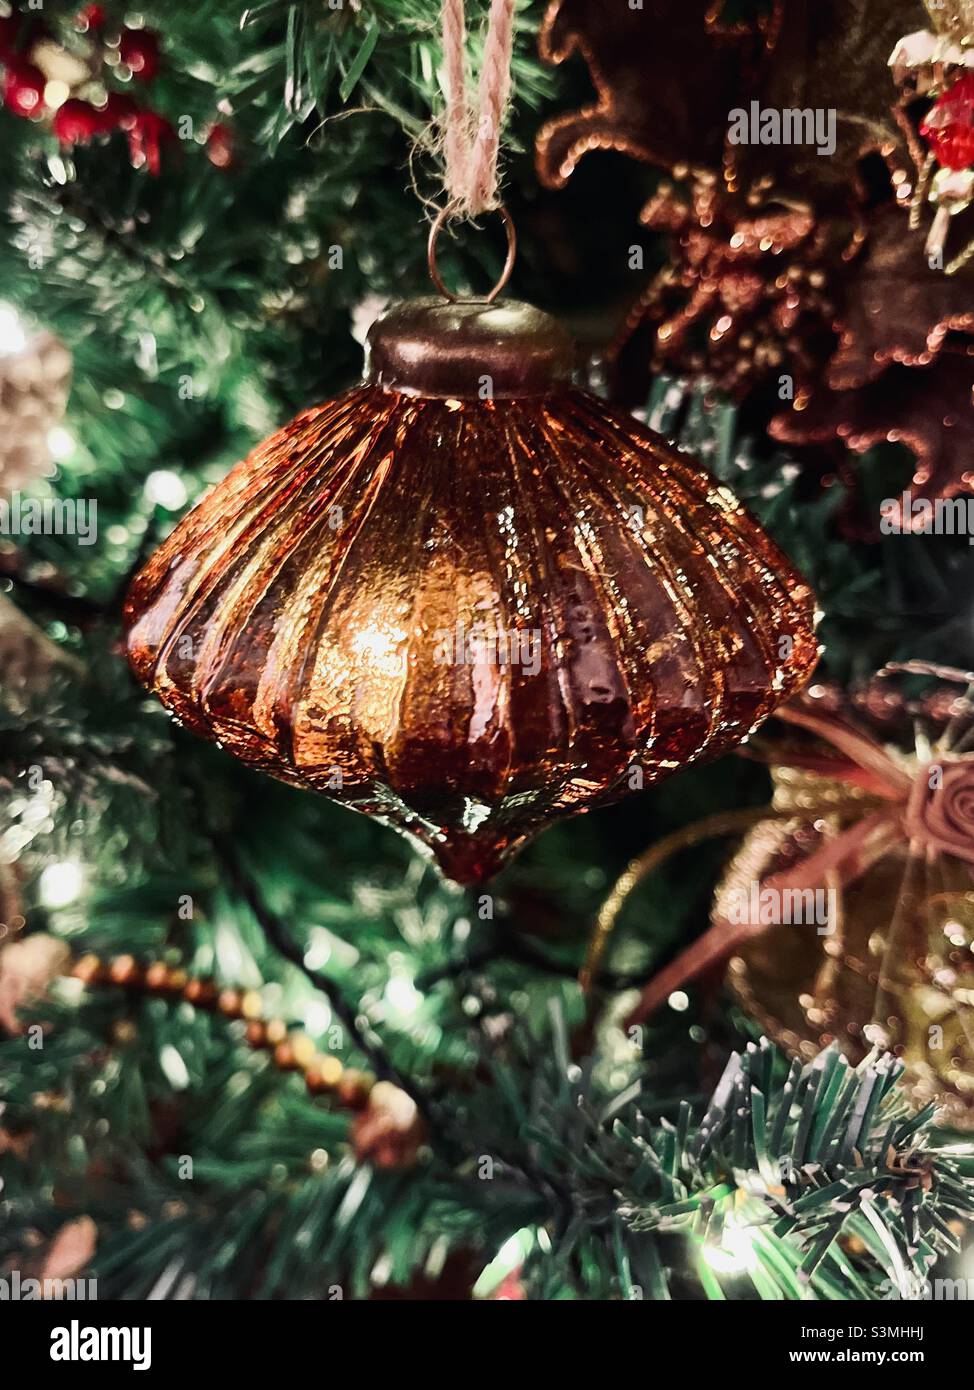 Decoraciones navideñas de bronce marrón iluminadas con luces de hadas en un árbol de Navidad Foto de stock